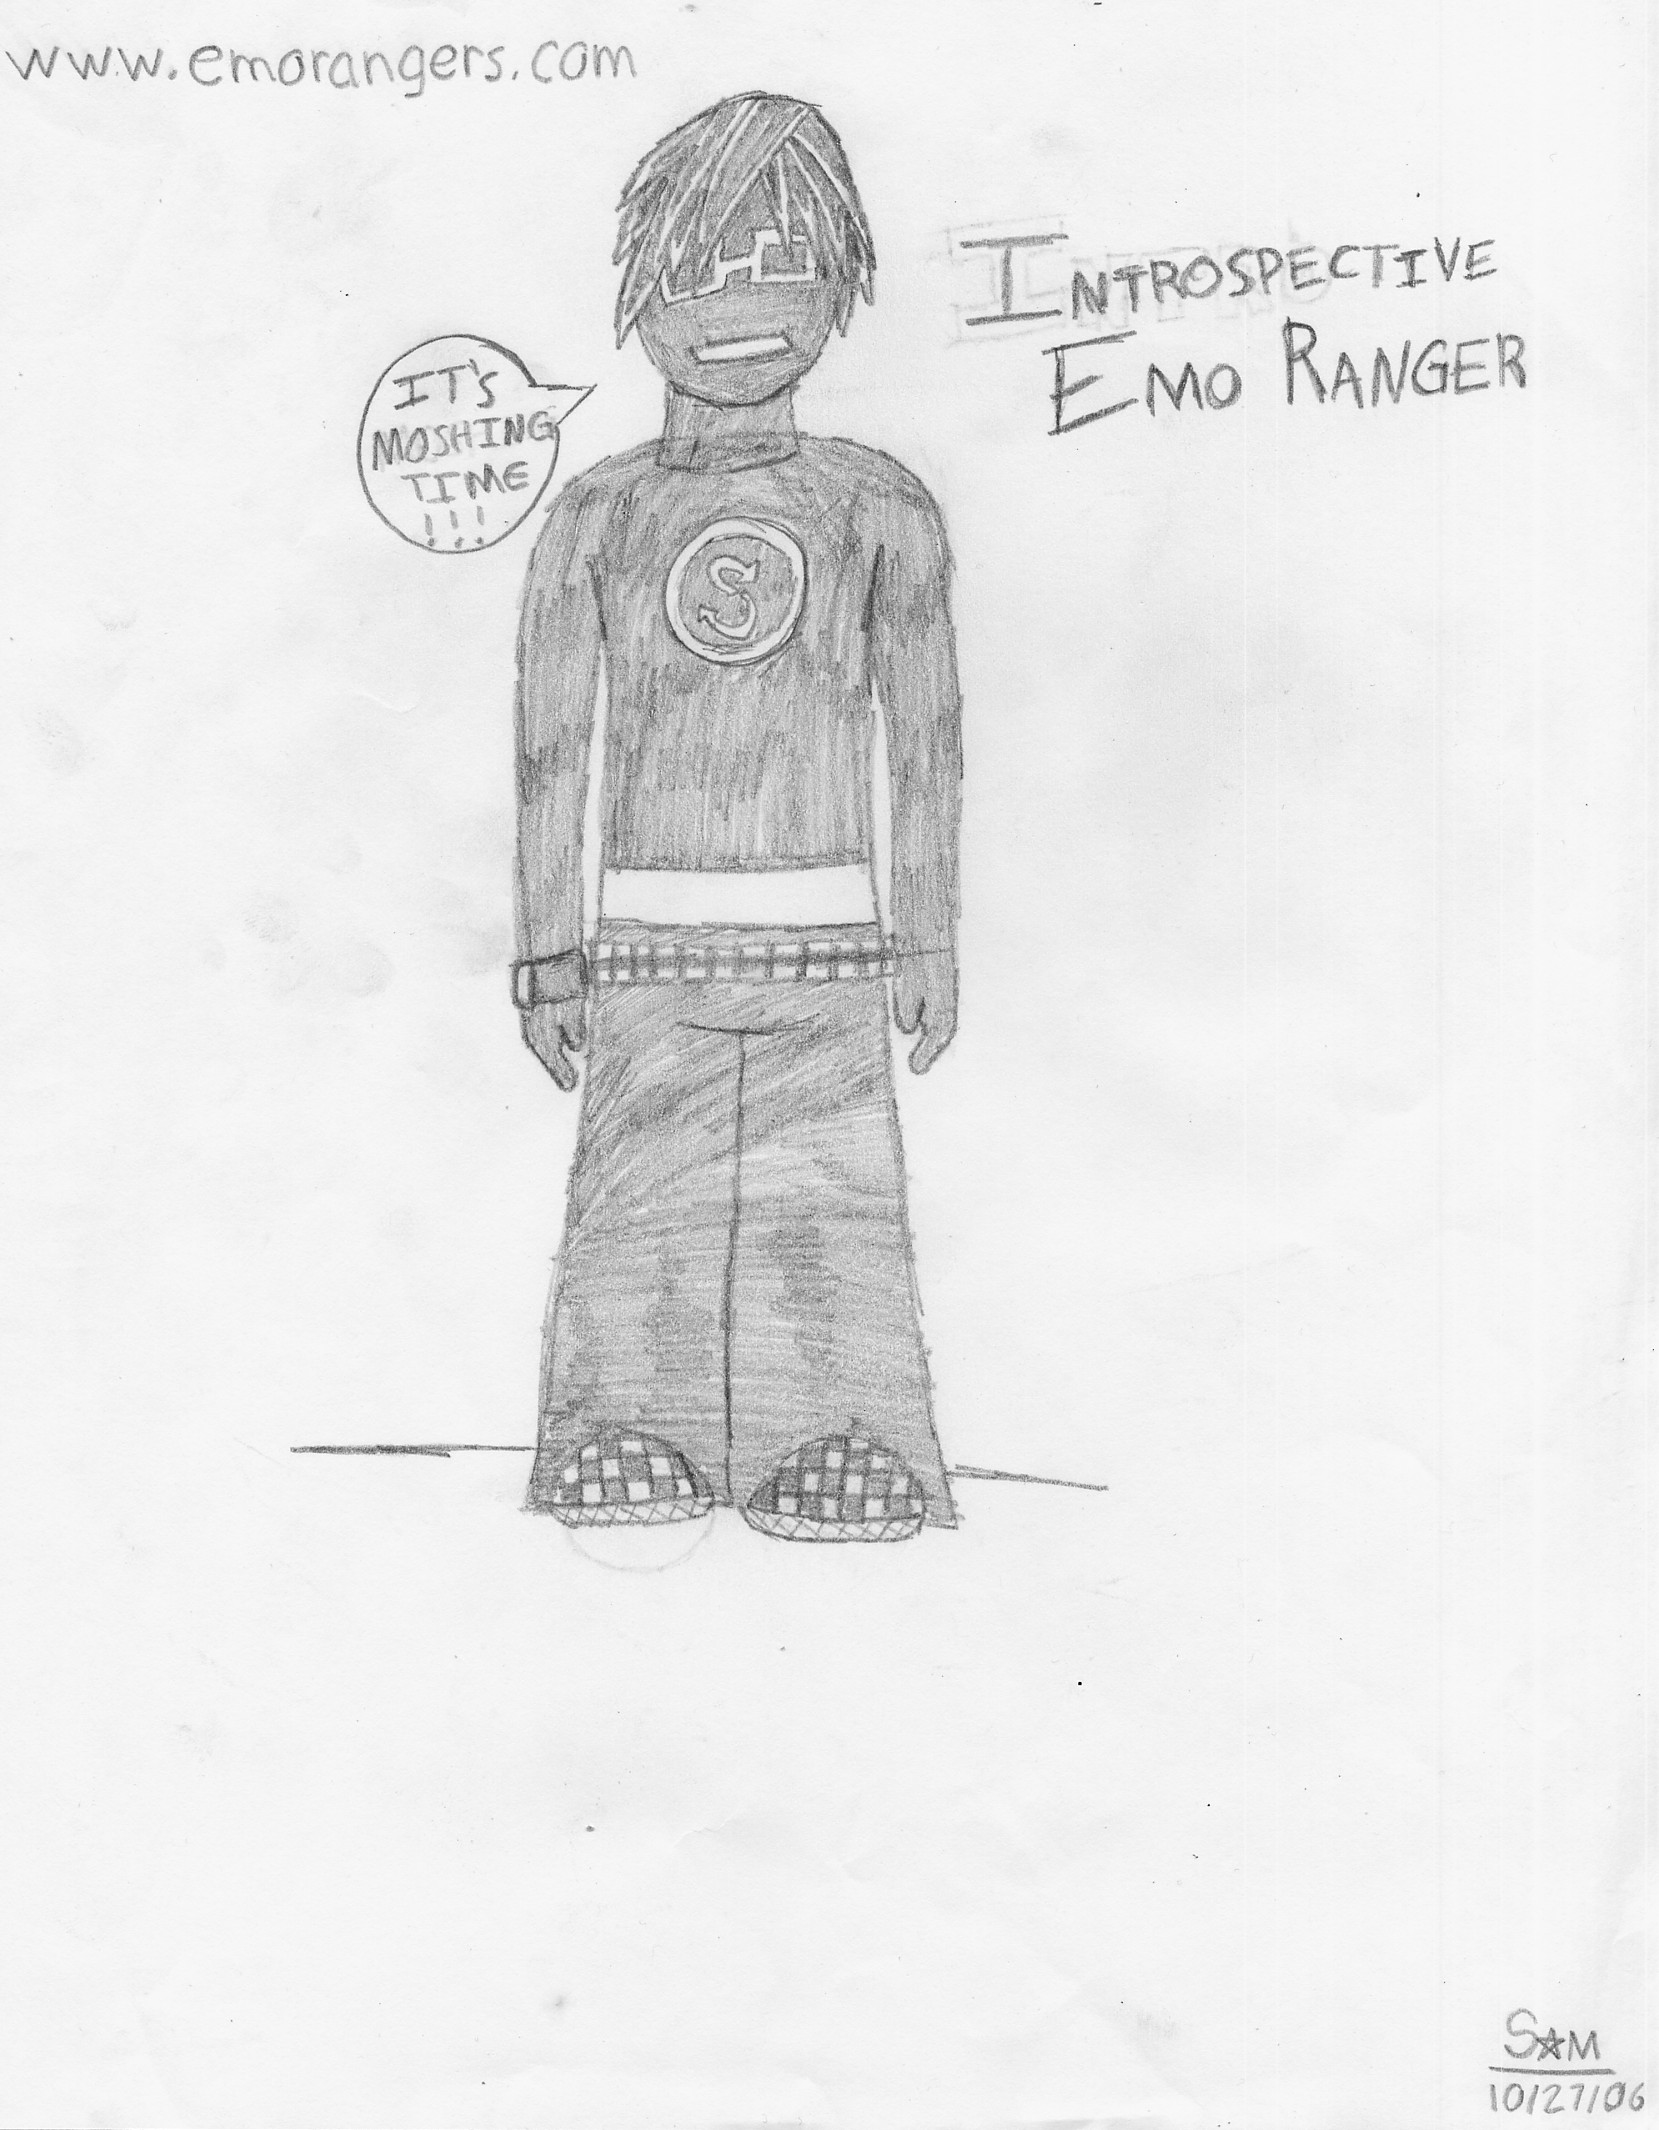 Introspective Emo Ranger by shorton1221